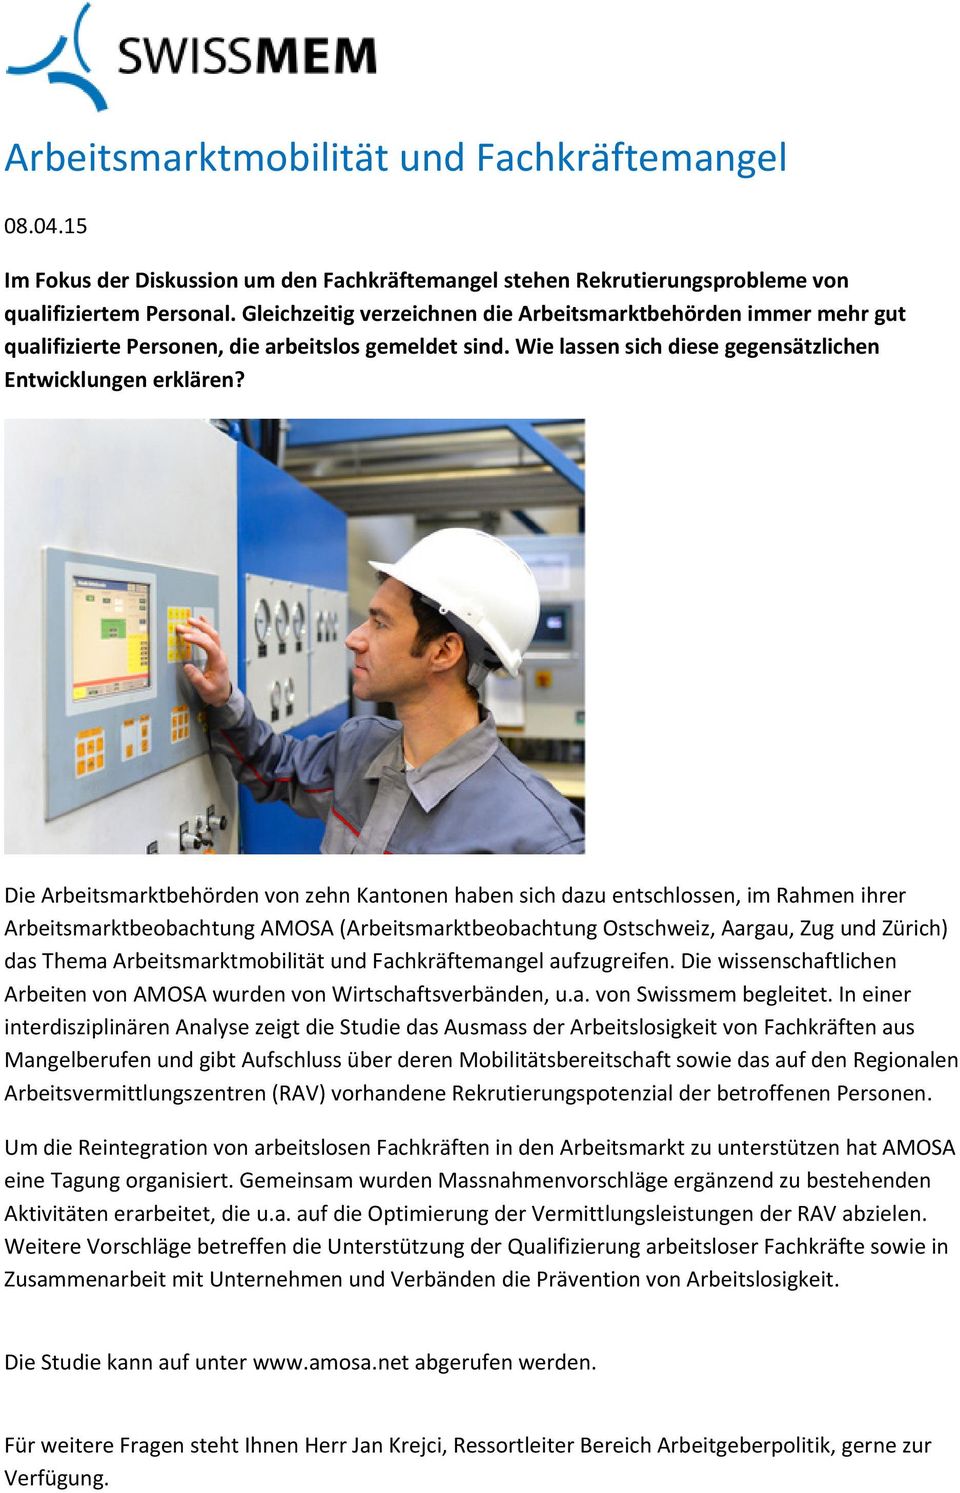 Die Arbeitsmarktbehörden von zehn Kantonen haben sich dazu entschlossen, im Rahmen ihrer Arbeitsmarktbeobachtung AMOSA (Arbeitsmarktbeobachtung Ostschweiz, Aargau, Zug und Zürich) das Thema